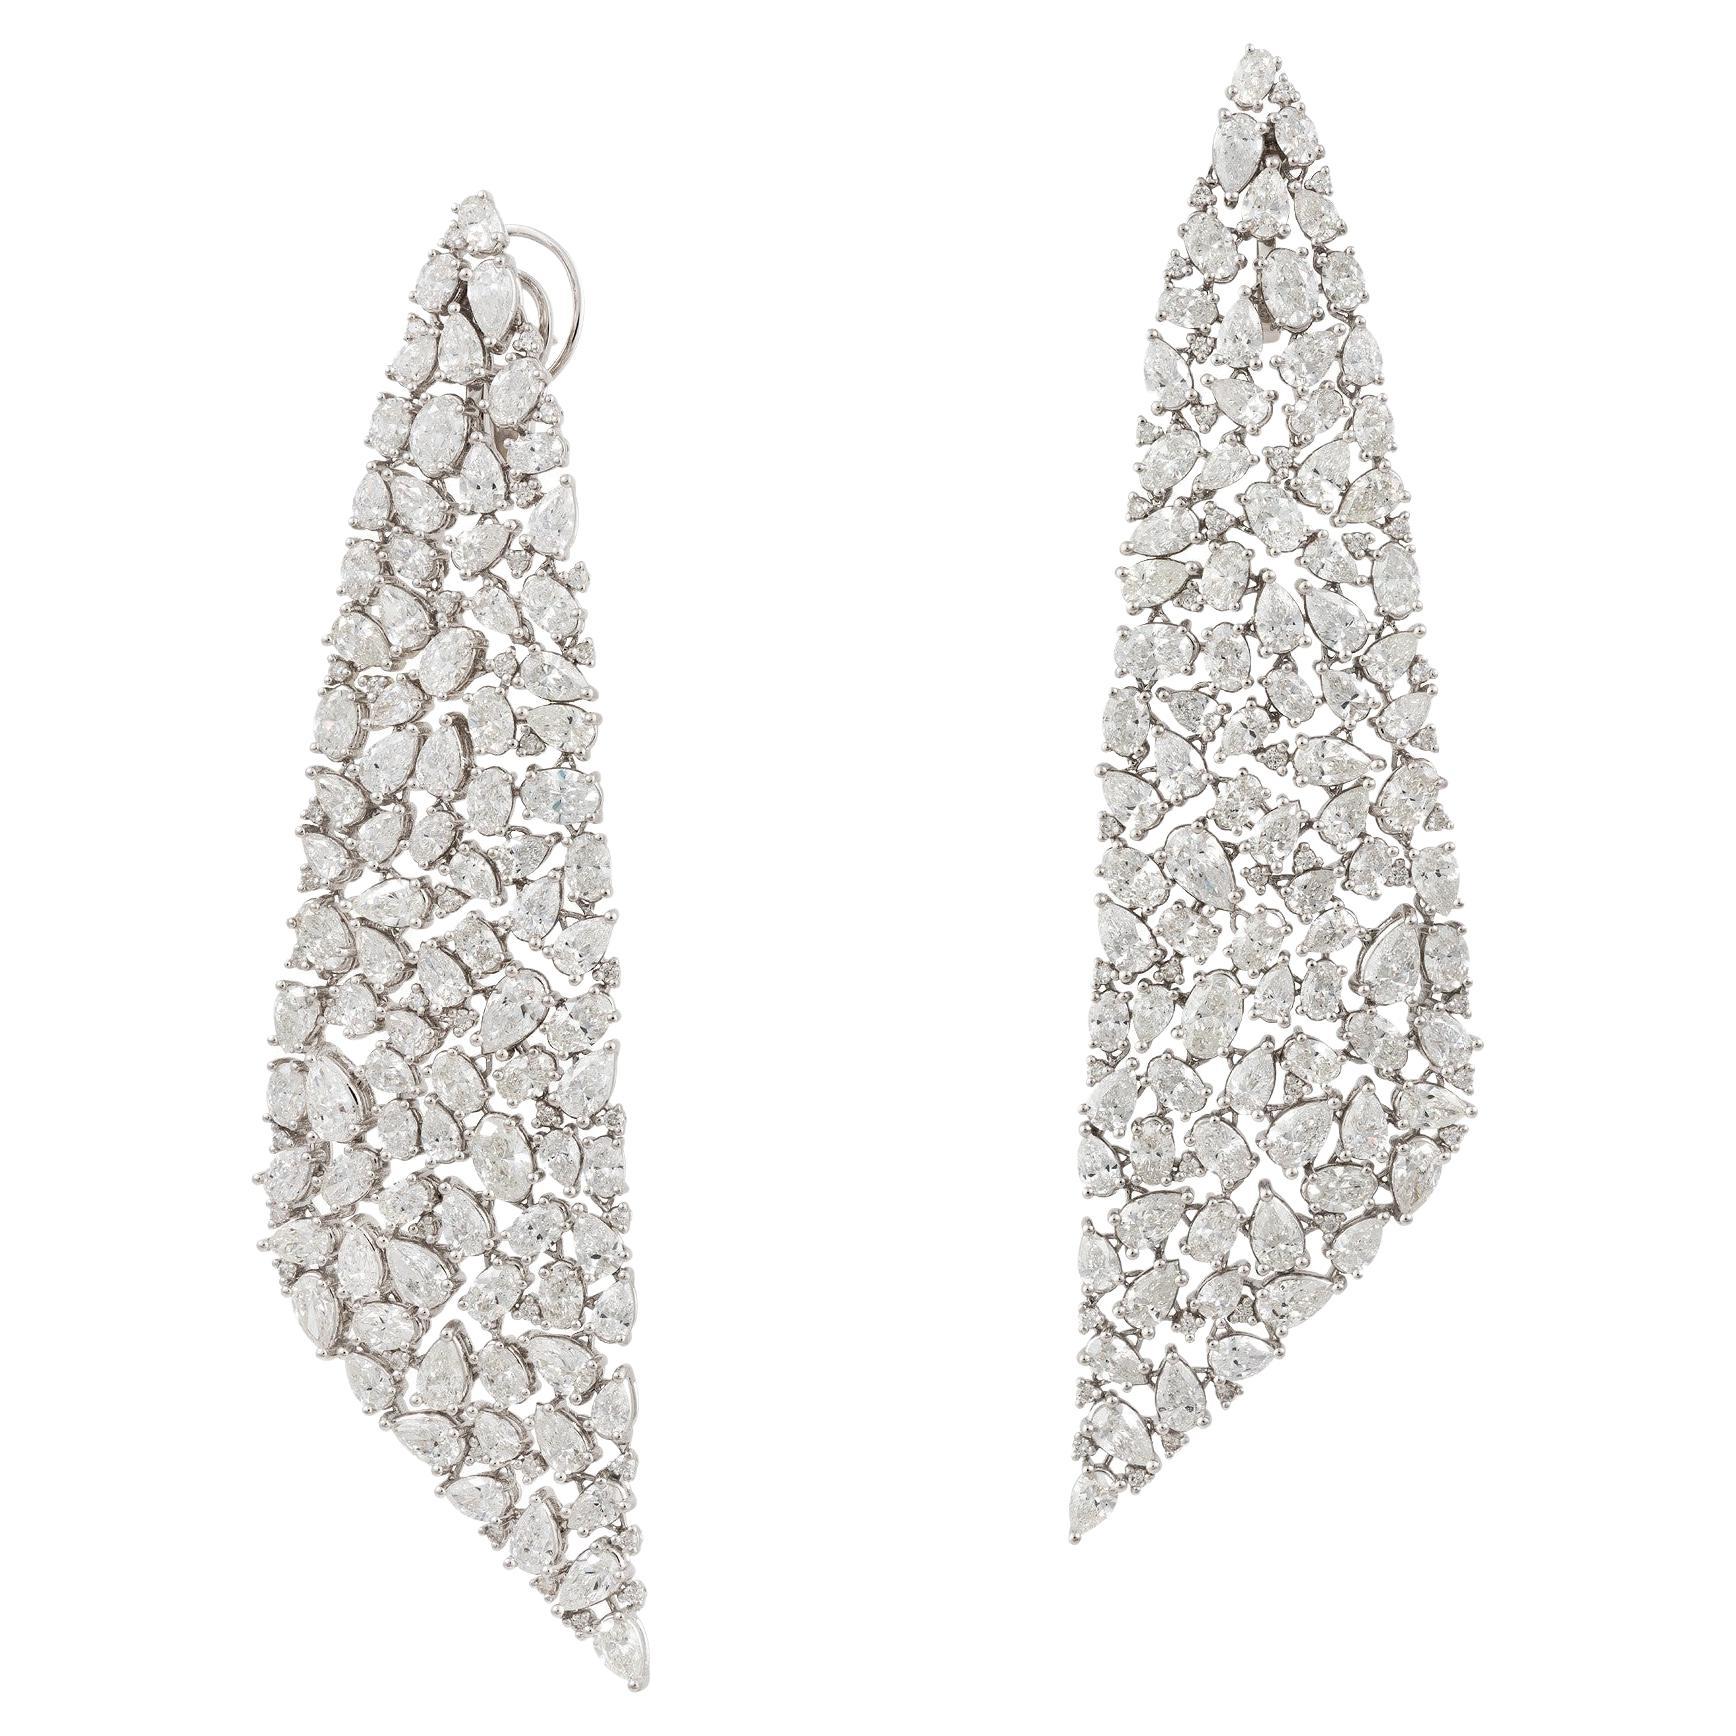 NWT $162, 500 Boucles d'oreilles pendantes en or 18KT avec de magnifiques diamants longs et fantaisistes.